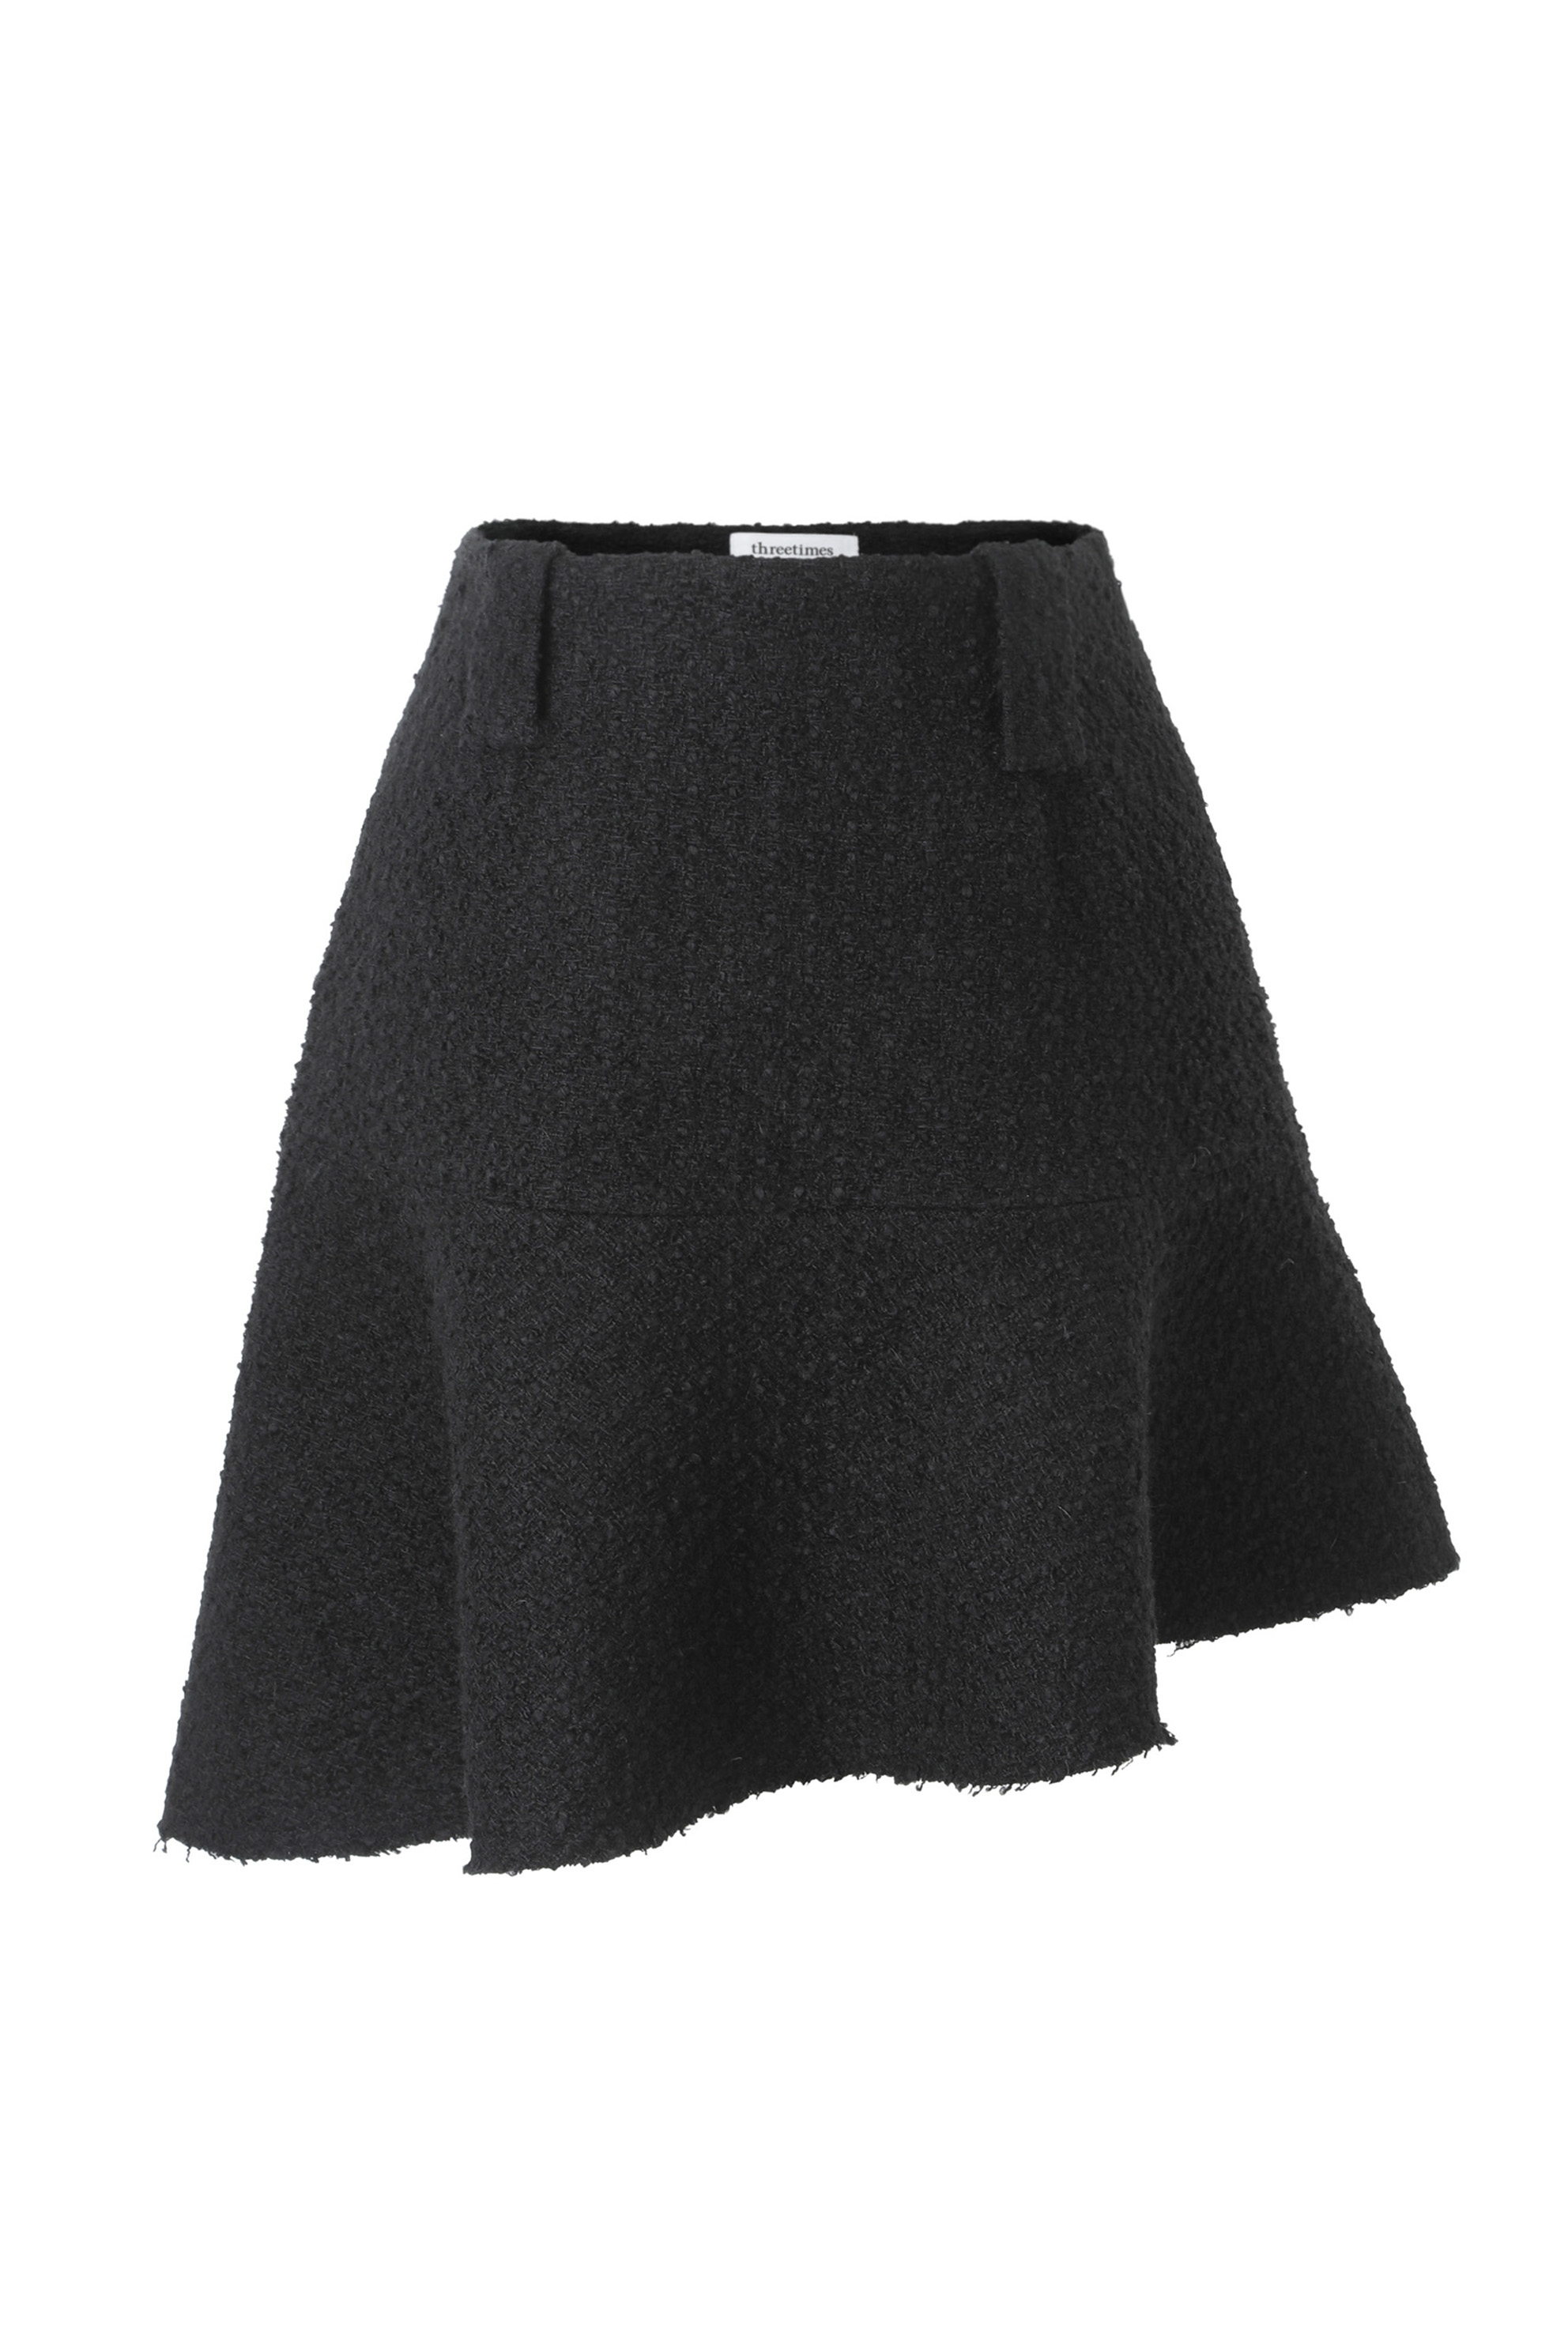 Lily tweed skirt